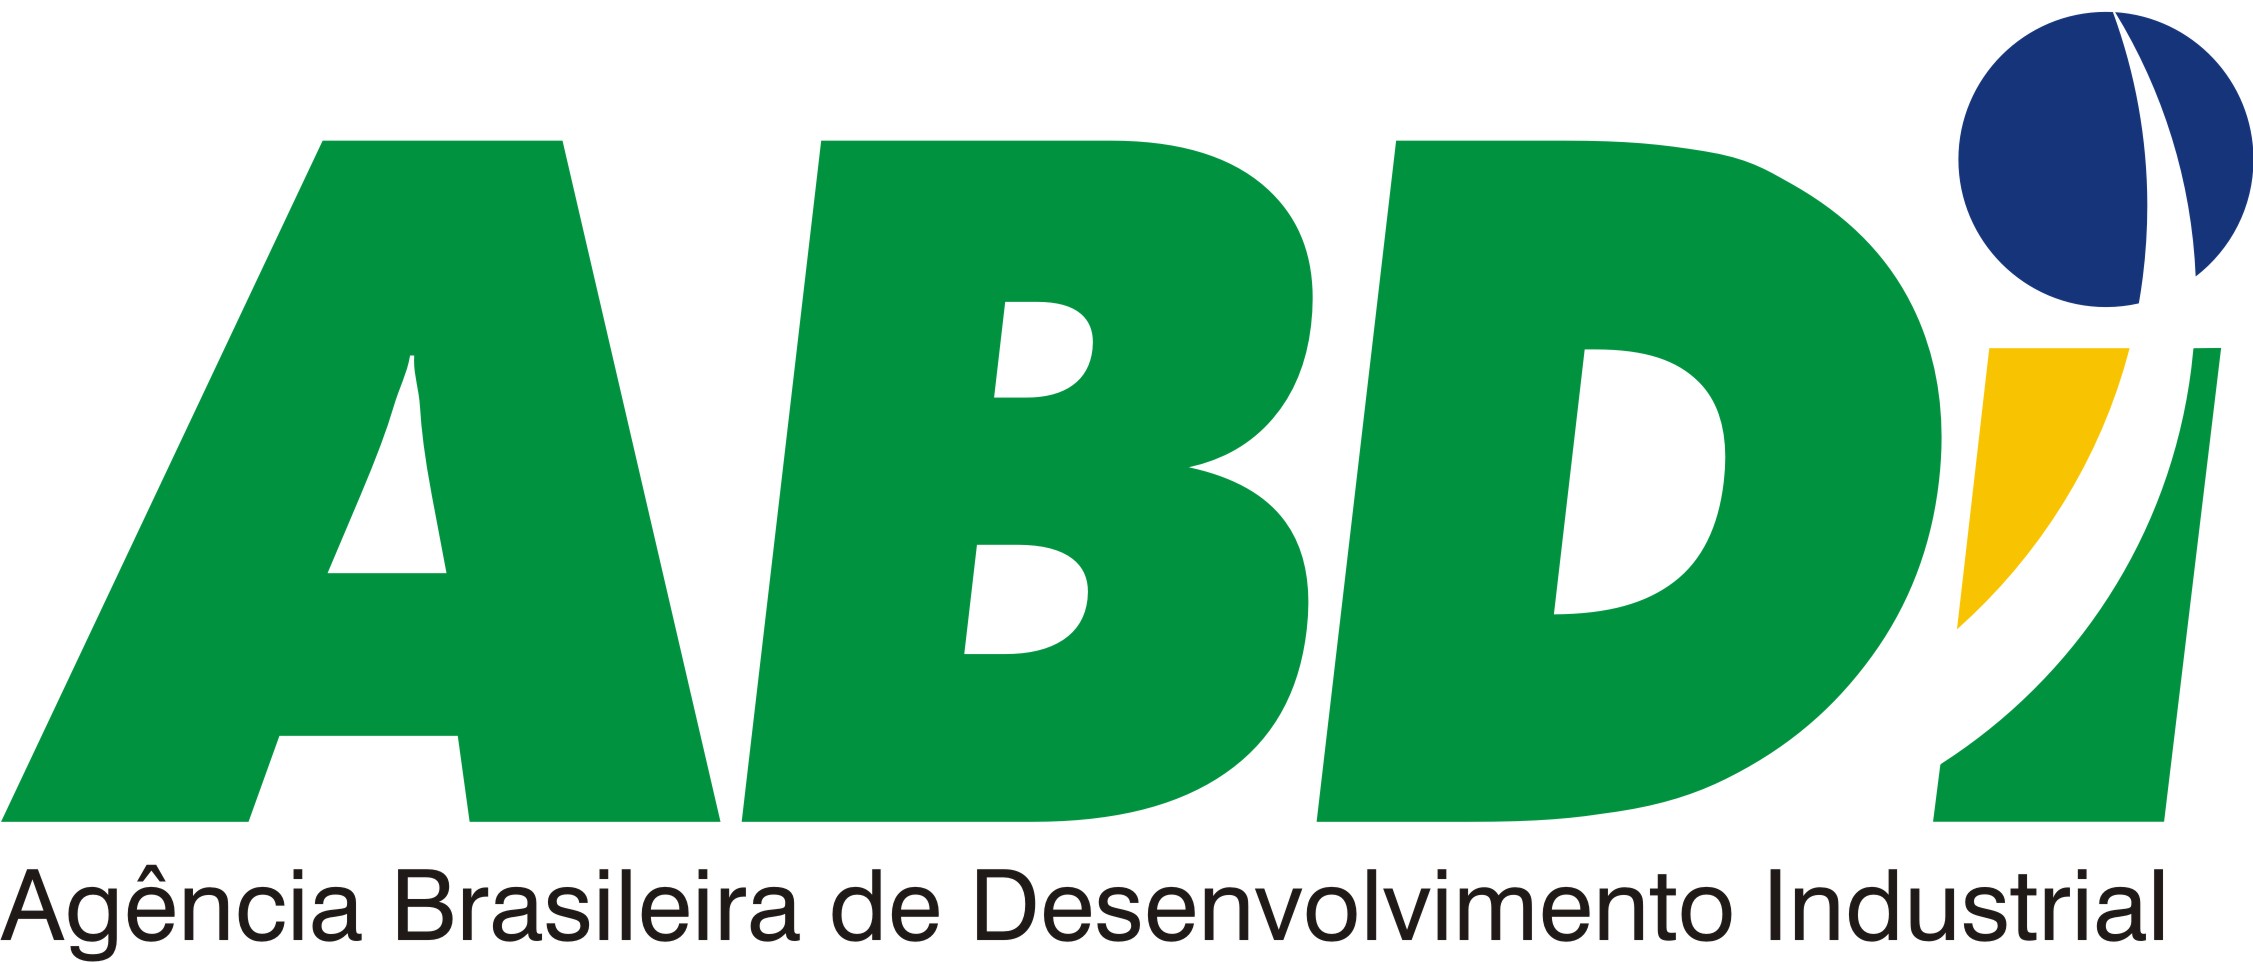 ABDI - Agência Brasileira de Desenvolvimento Industrial